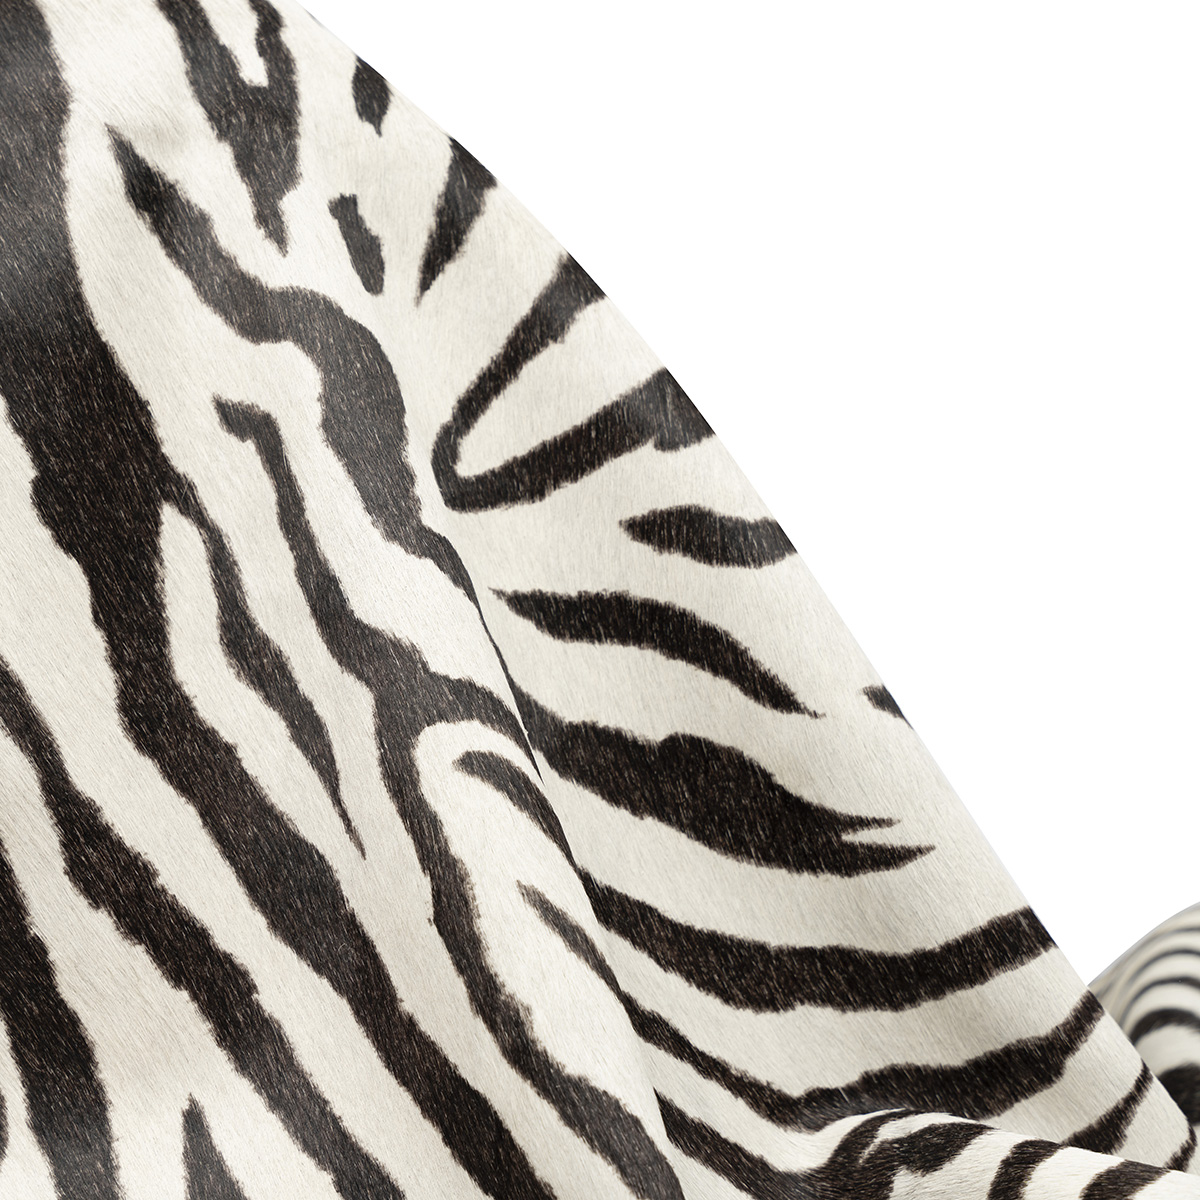 Upholstery Zebra Print